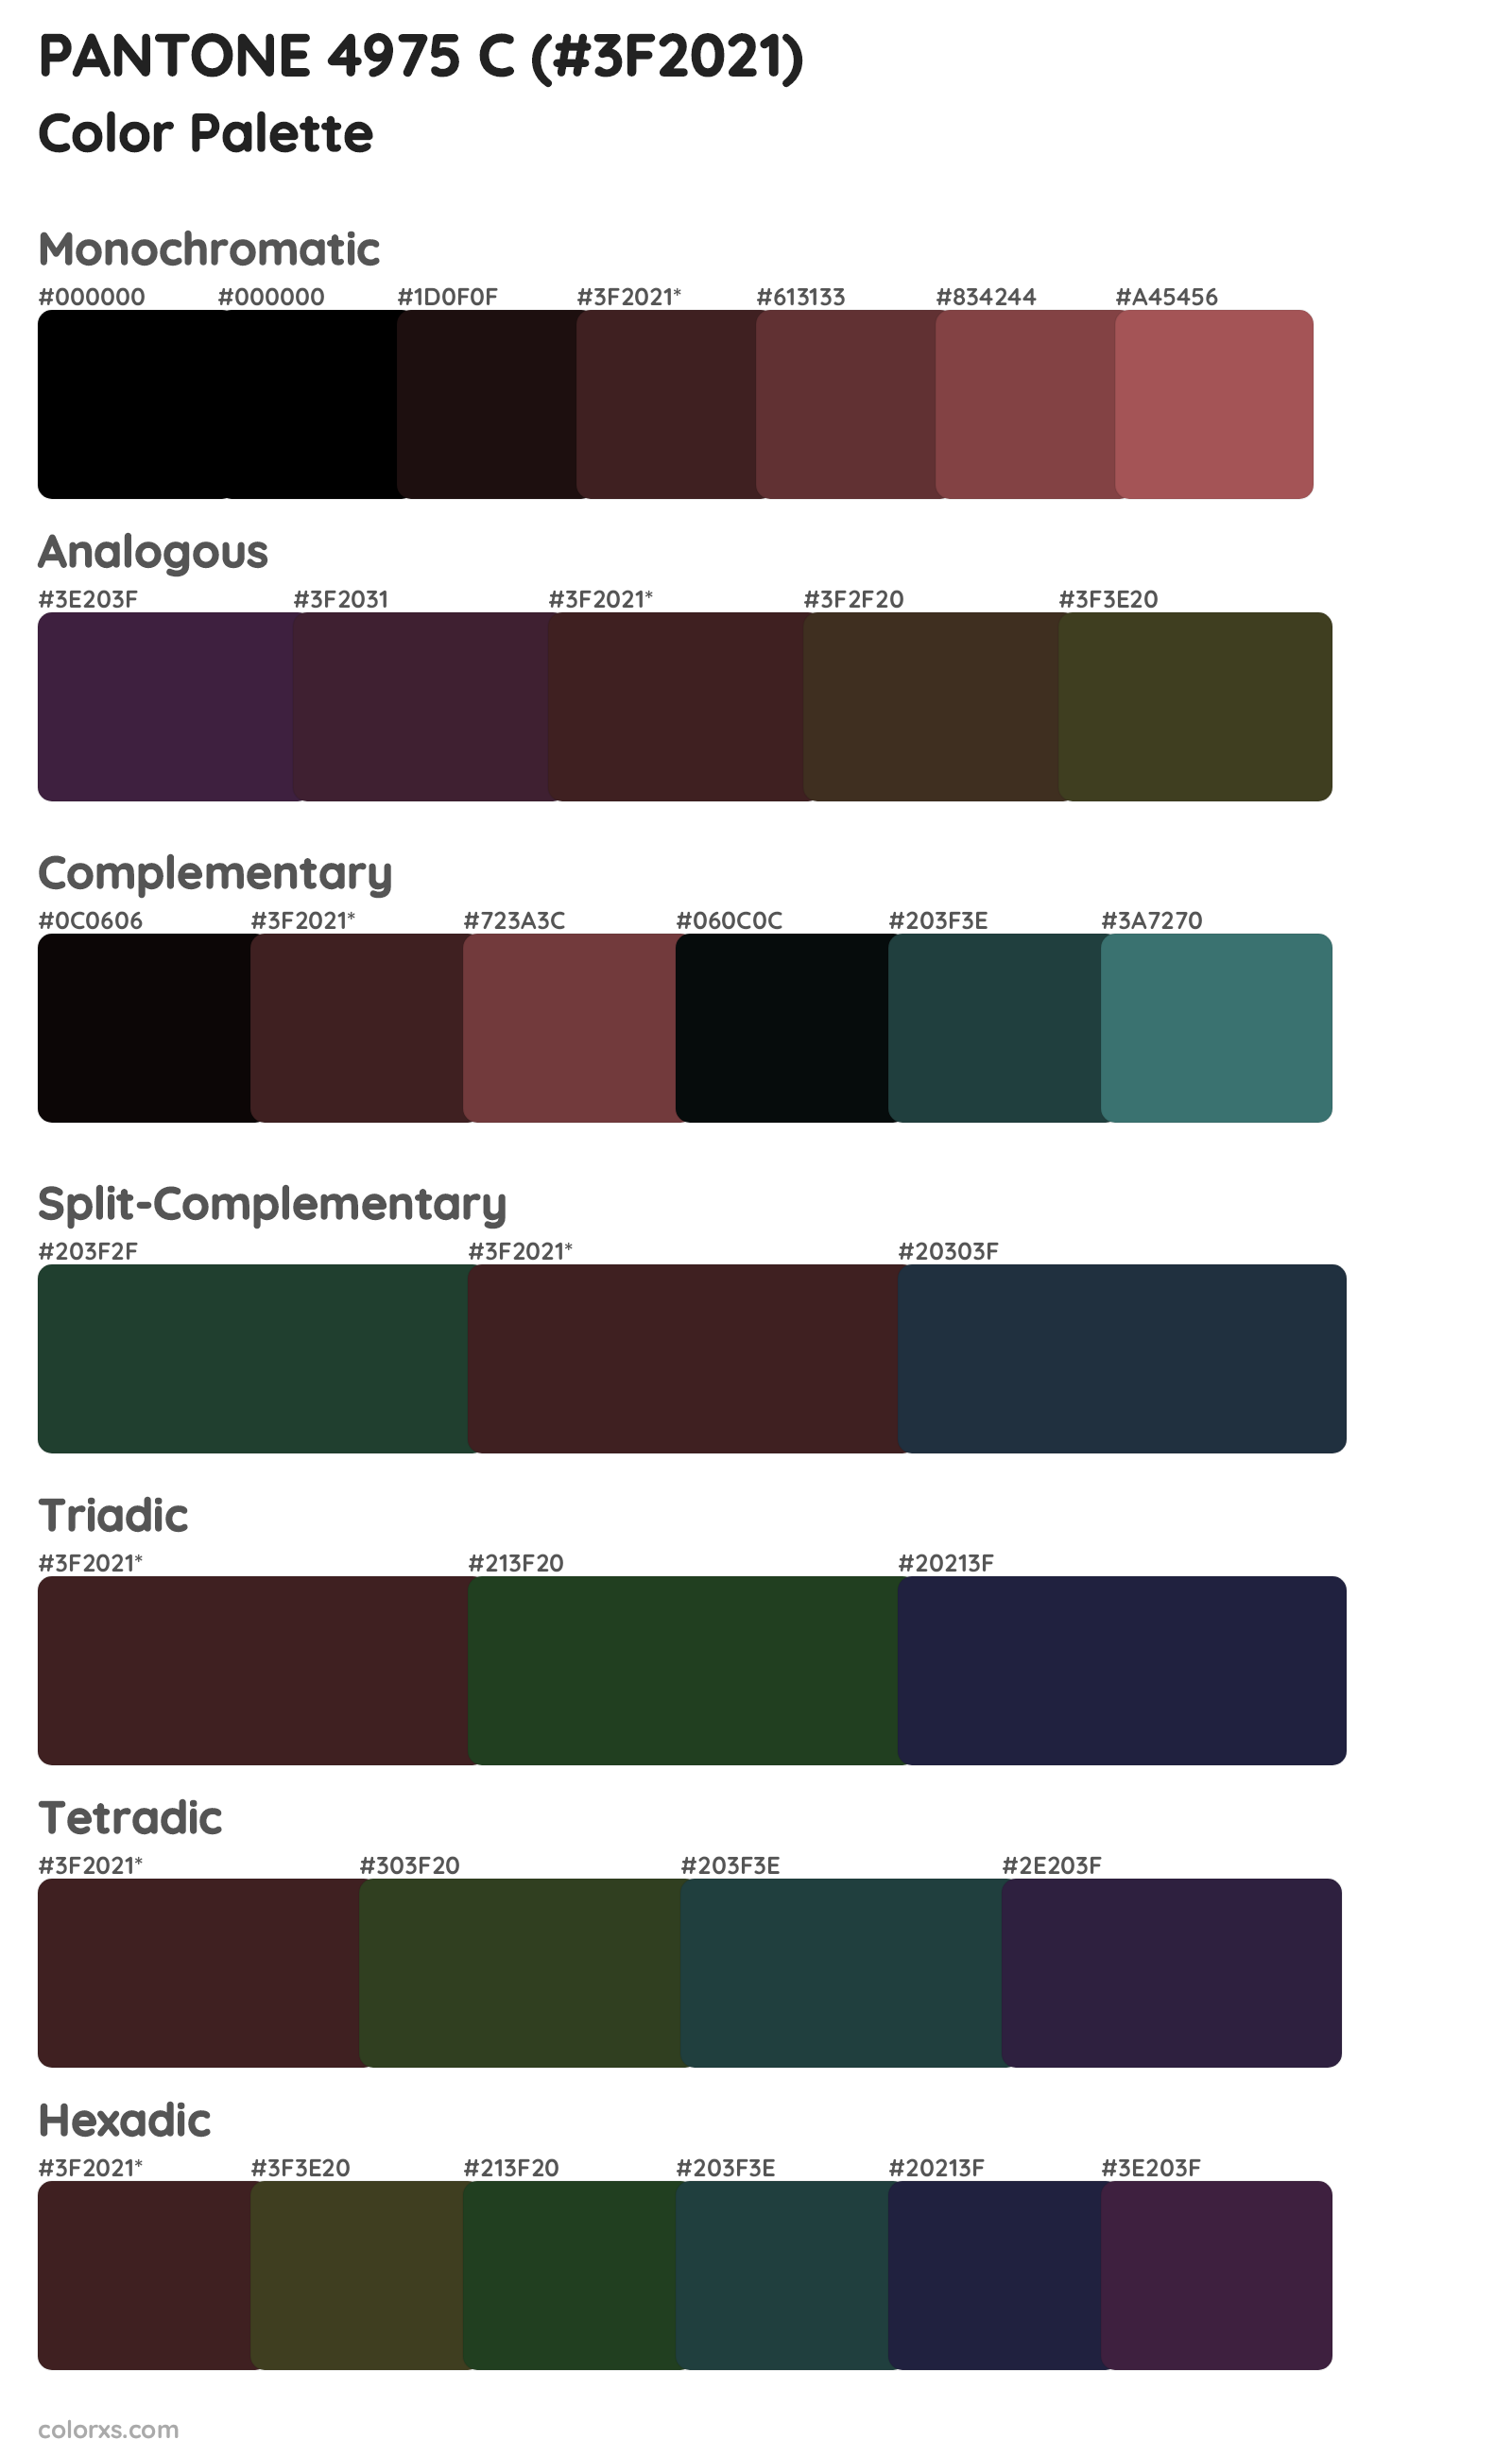 PANTONE 4975 C Color Scheme Palettes